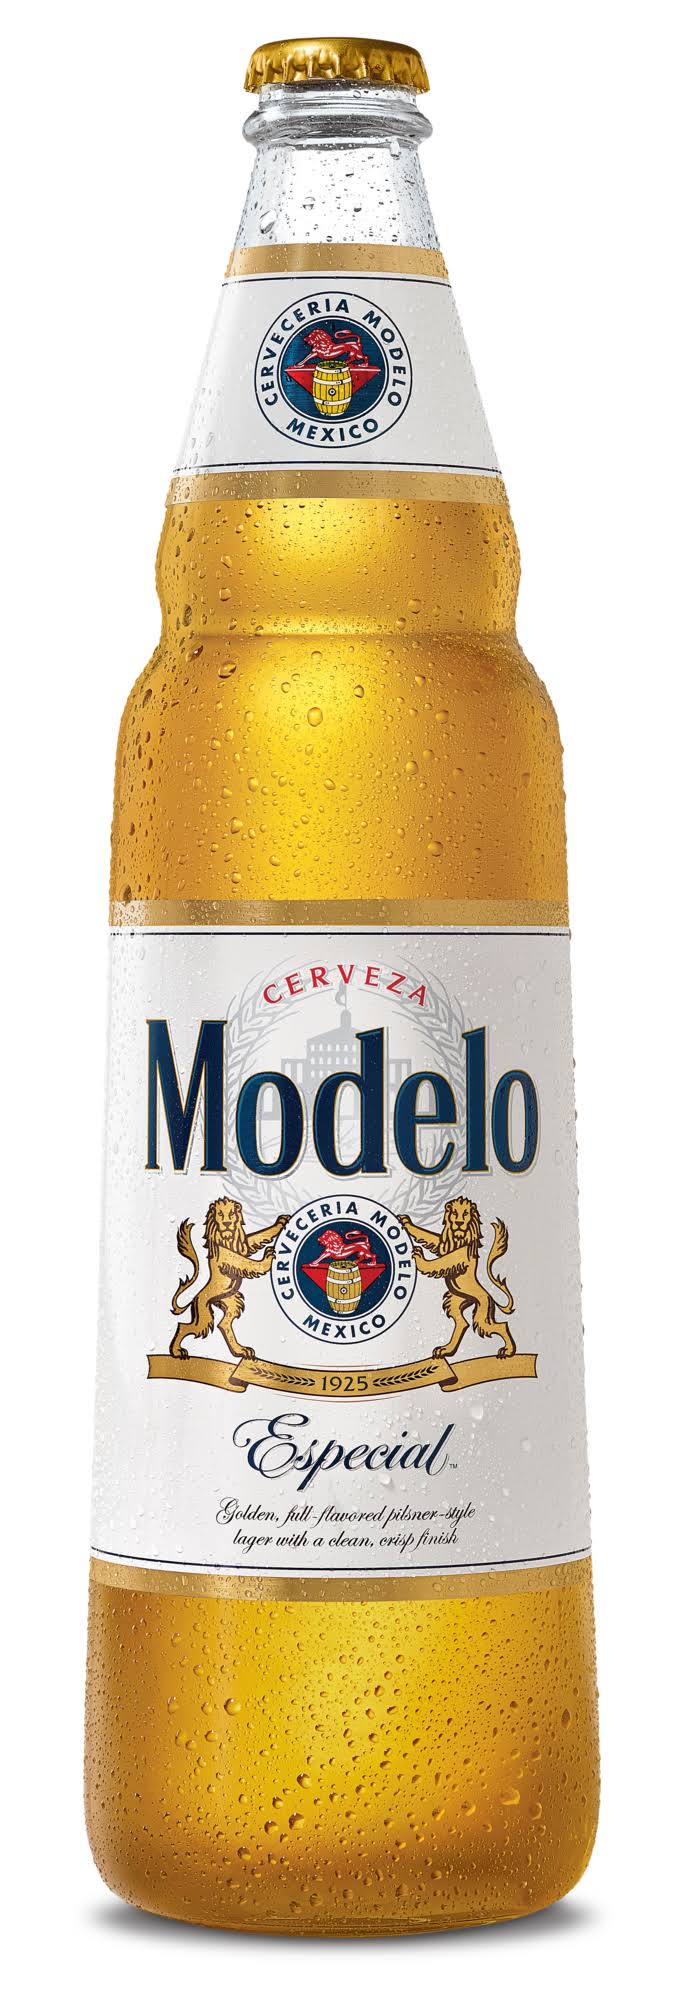 Modelo Beer, Especial - 24 fl oz